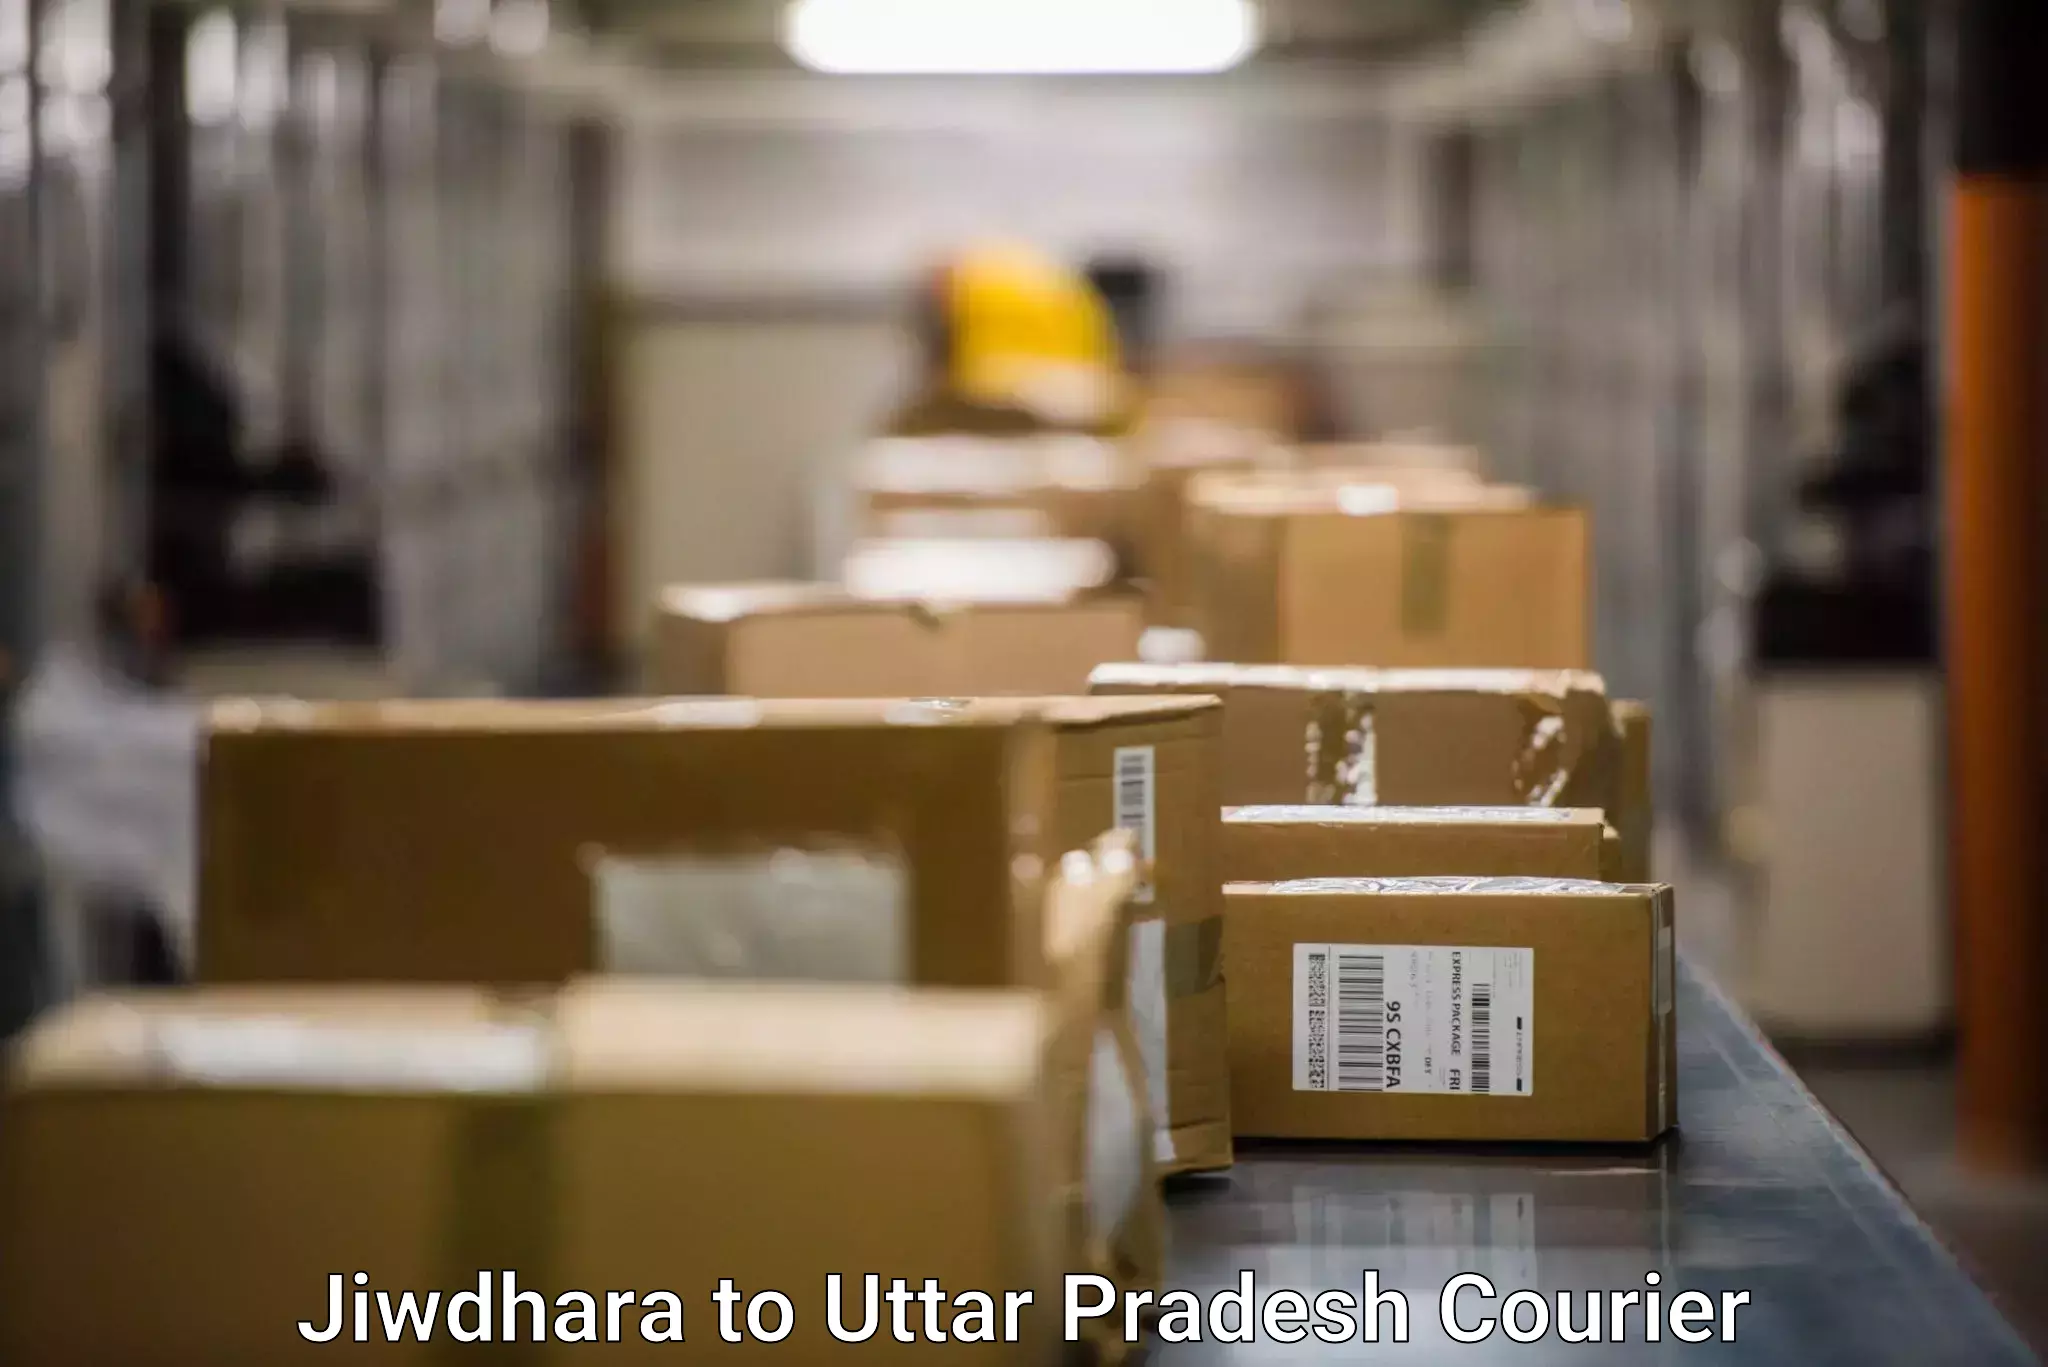 Customized shipping options Jiwdhara to Varanasi